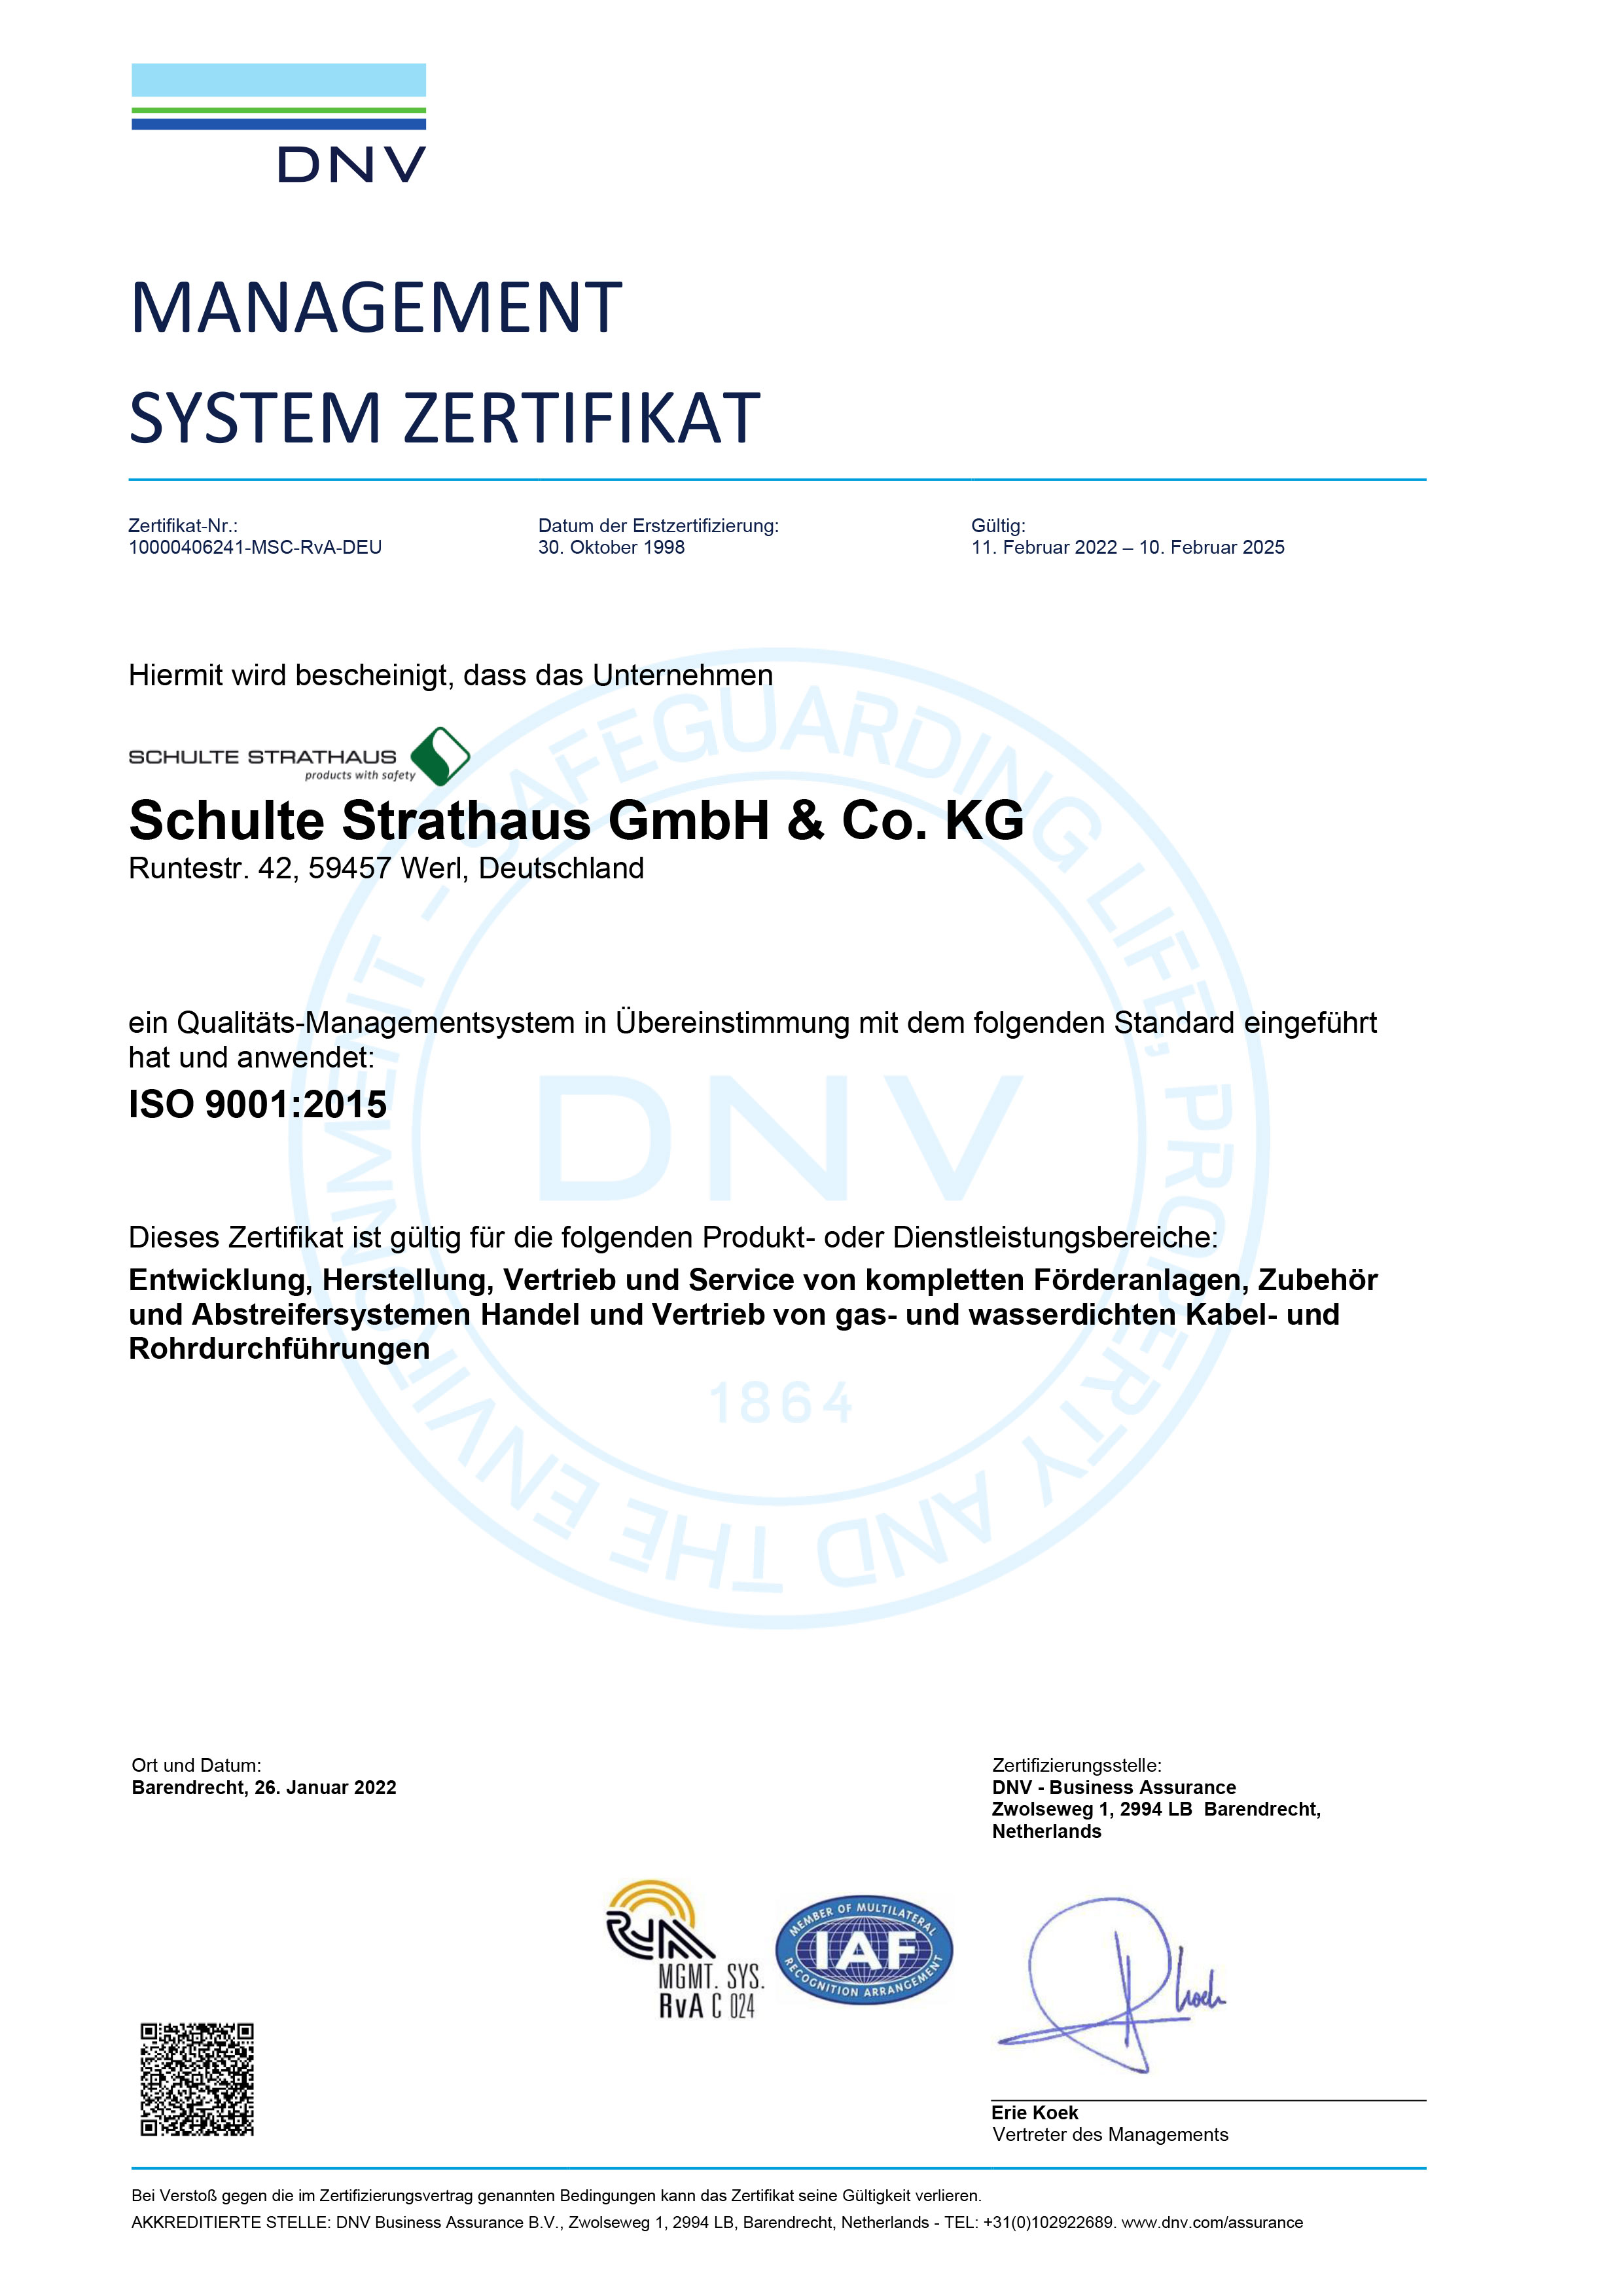 DNV GL Management System Certificate ISO 9001:2015 (DE)